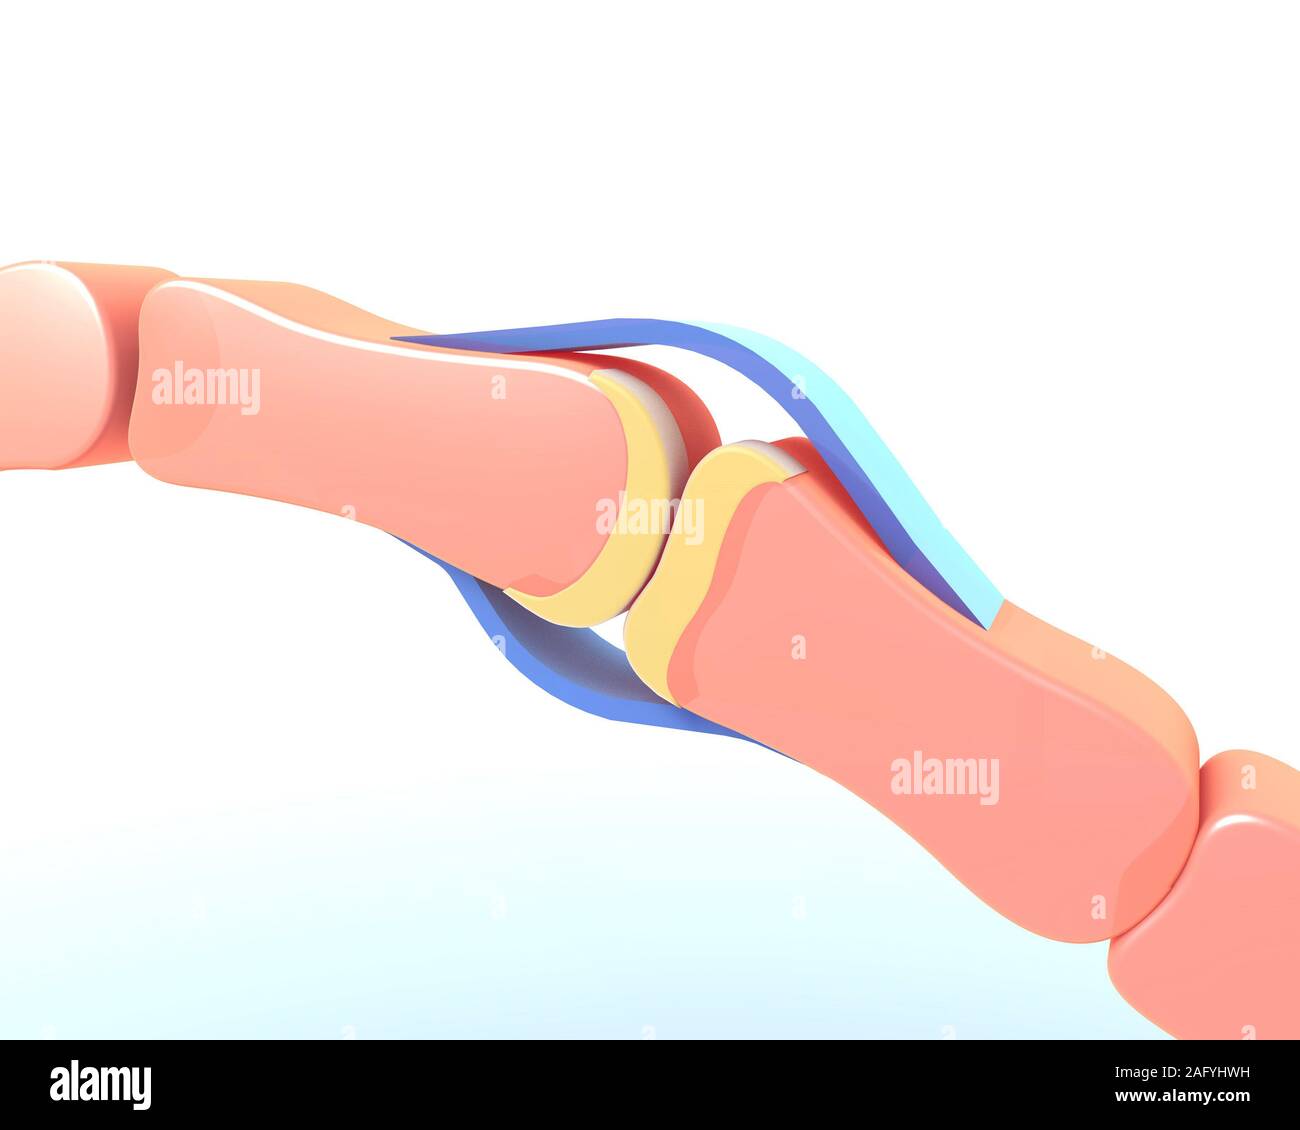 3d illustration de l'Articulations synoviales de l'os d'une main. Représentation graphique schématique et symbolique. Banque D'Images